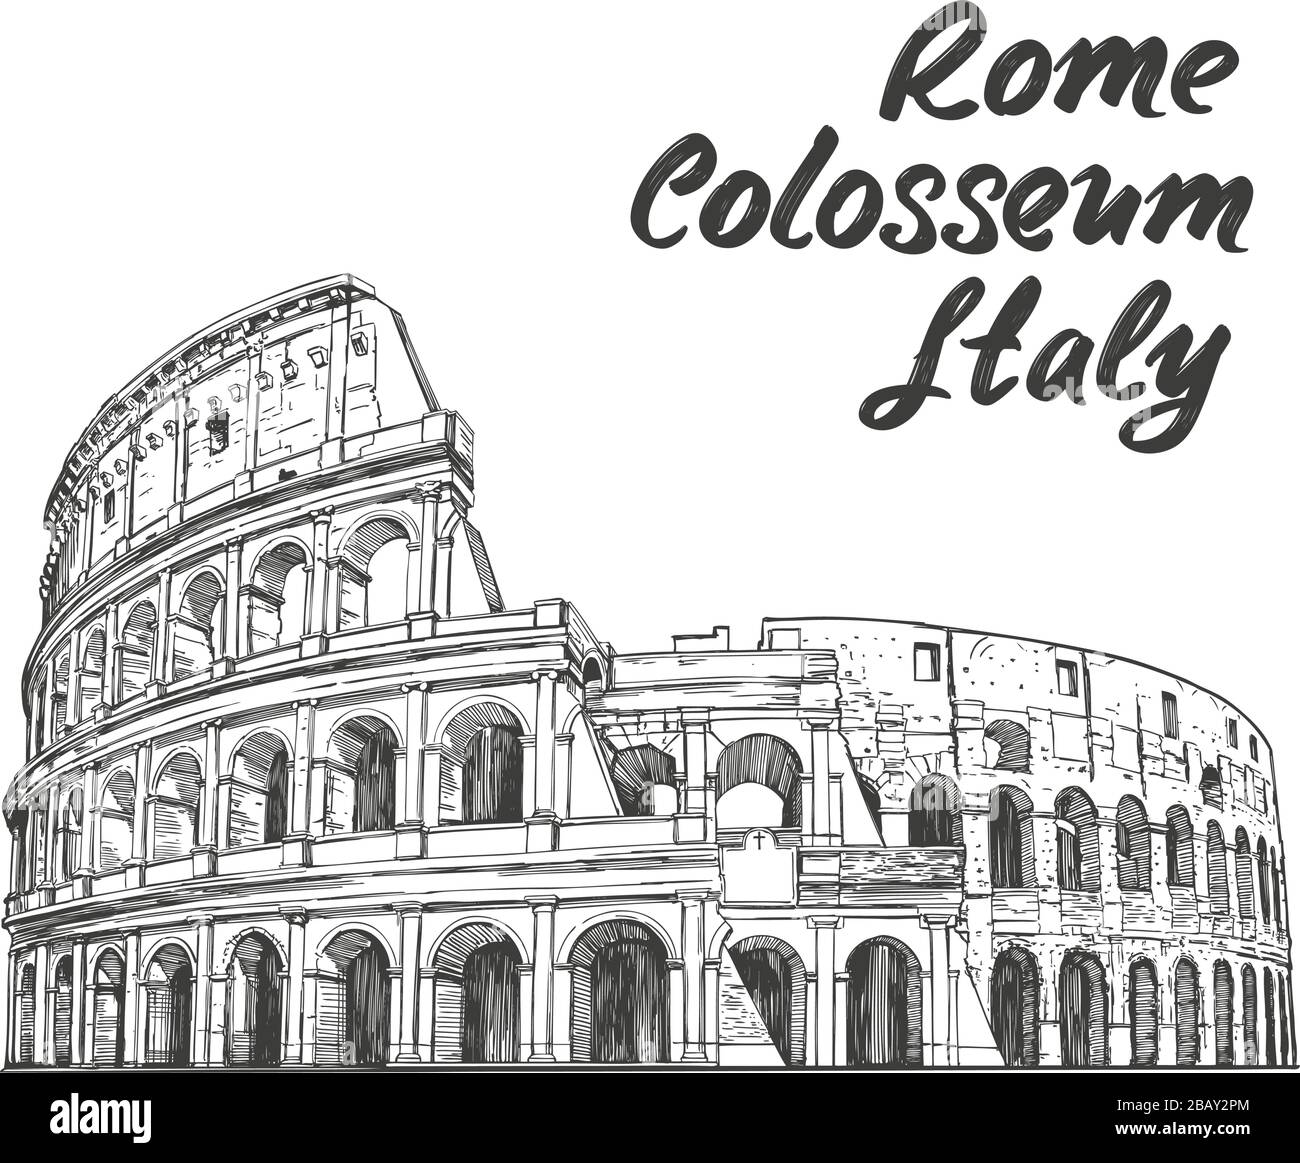 Kolosseum, ein altes Amphitheater, ein architekturhistorisches Wahrzeichen Roms, Italiens. Handgezeichnete Skizze zur Vektorgrafiken isoliert auf einem weißen Stock Vektor